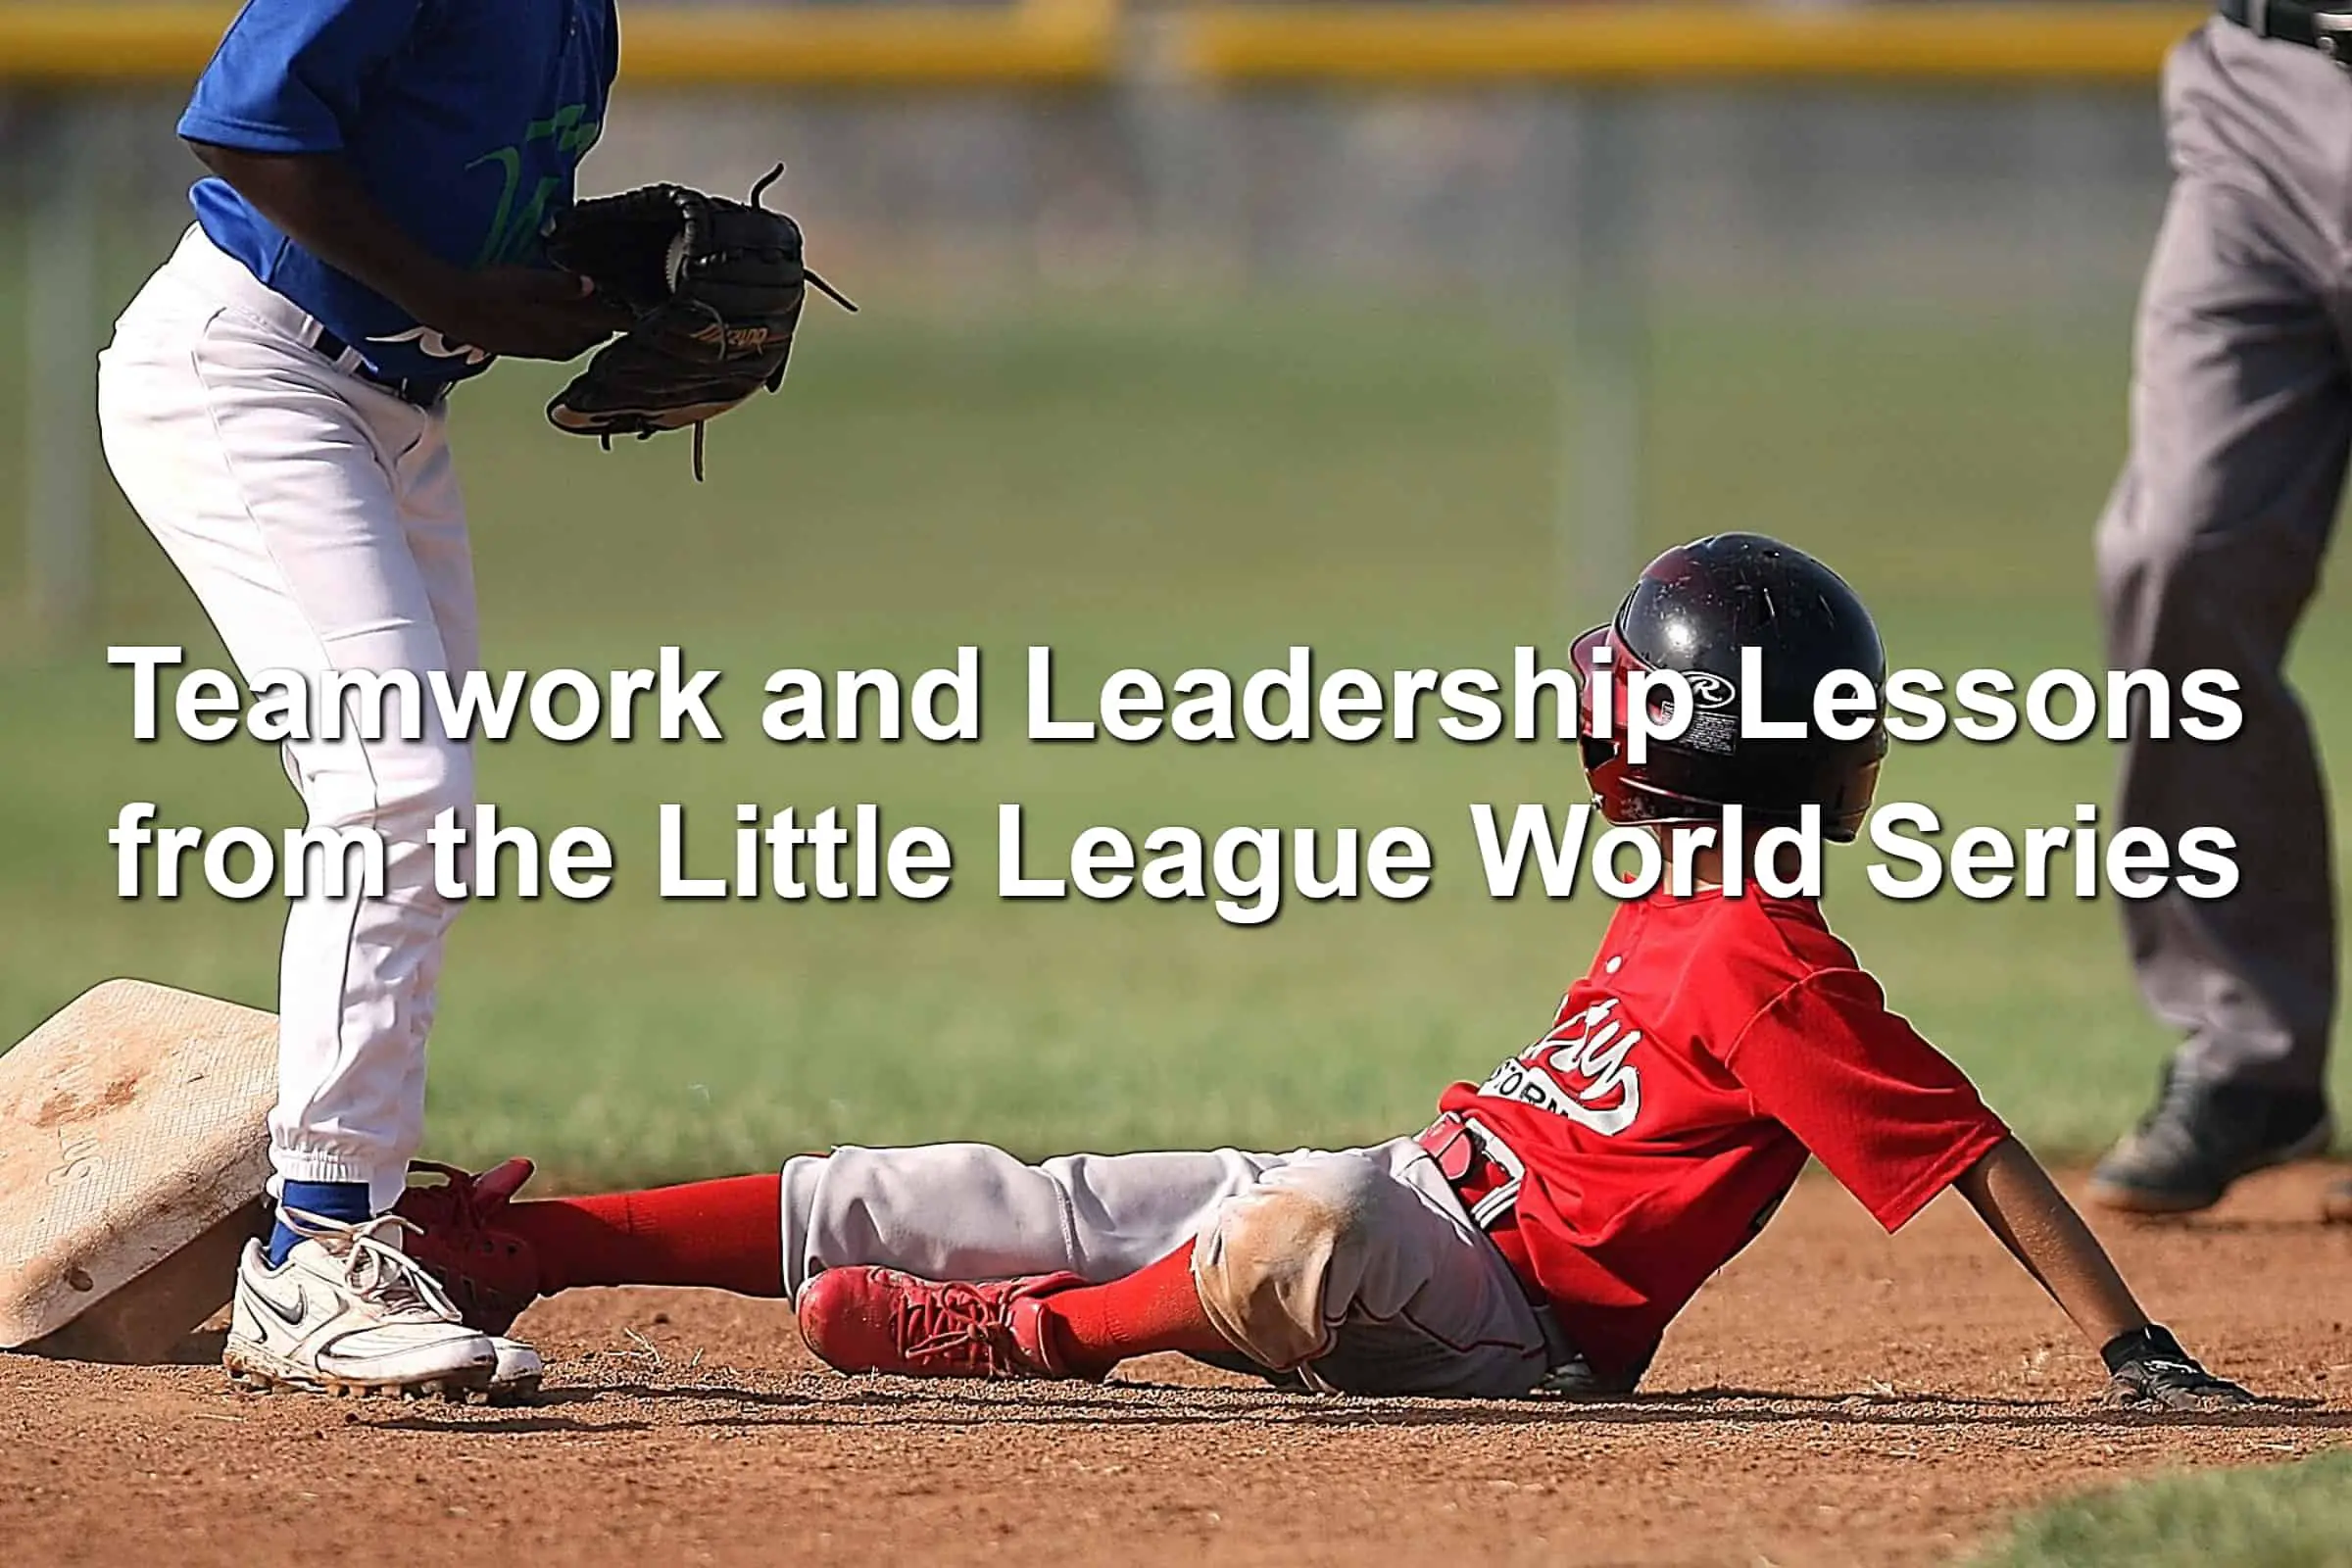 Little league baseball player sliding into a base